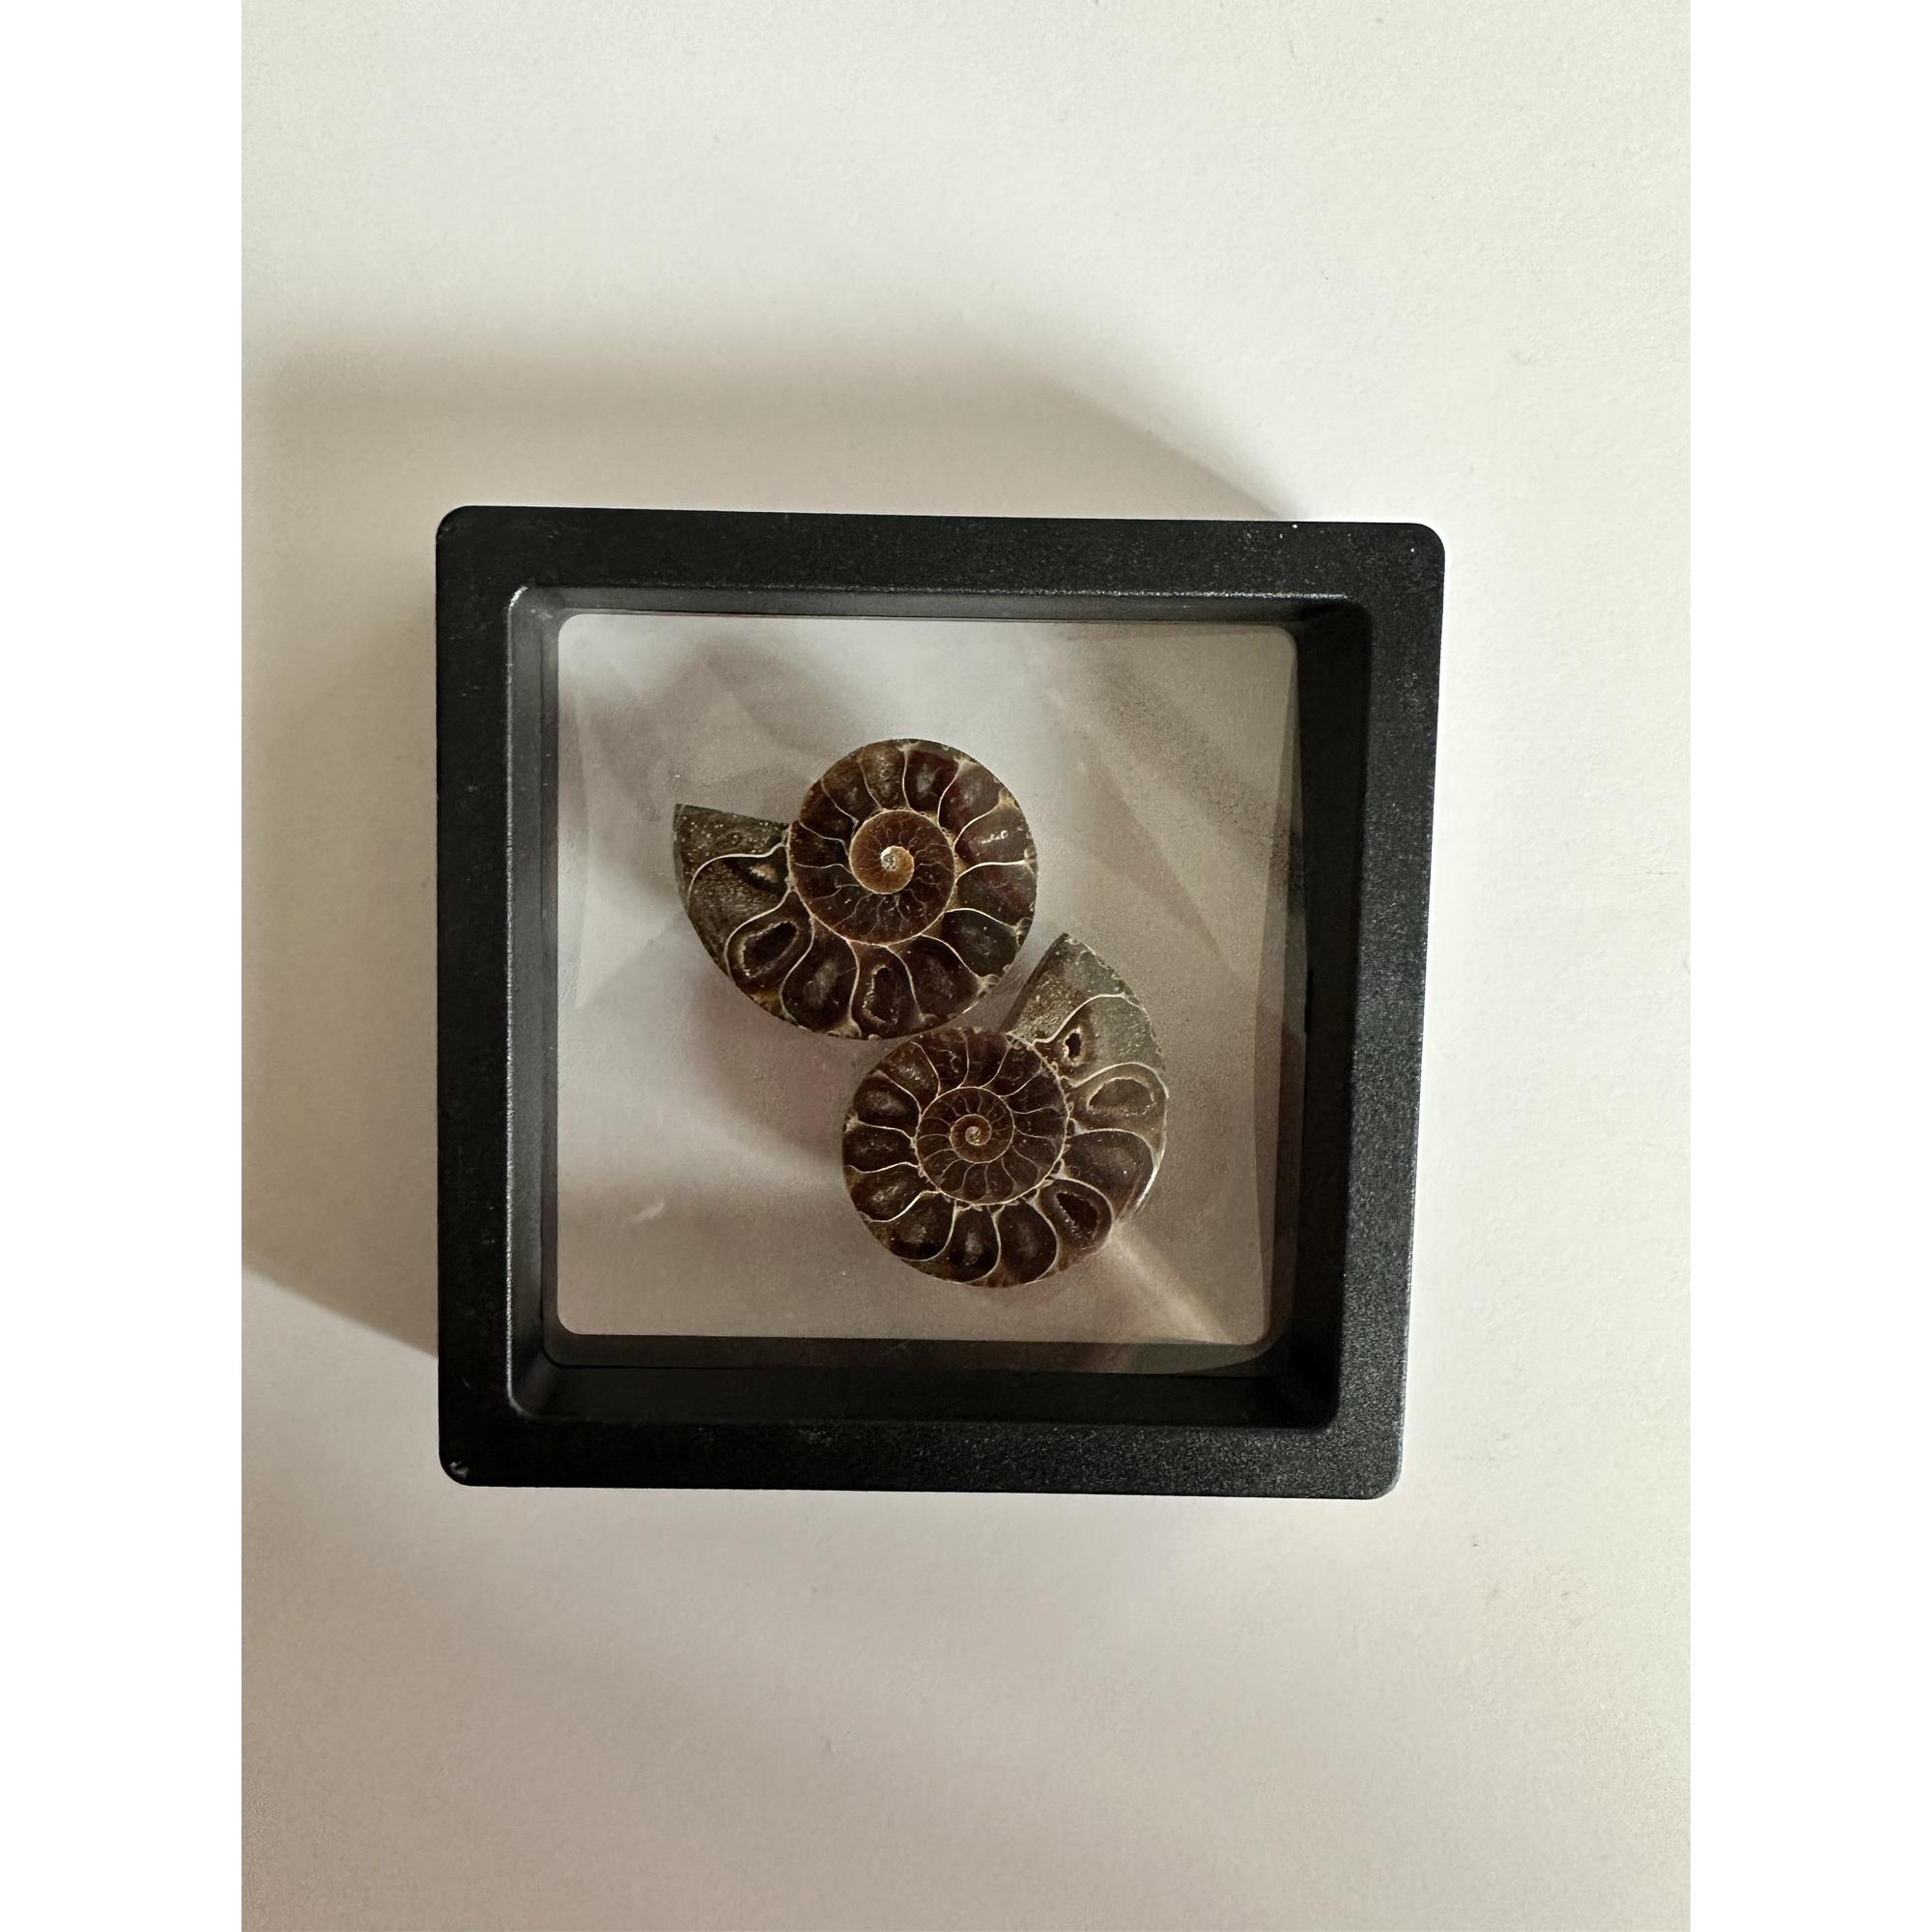 Ammonite pair in 3d floating frame Prehistoric Online